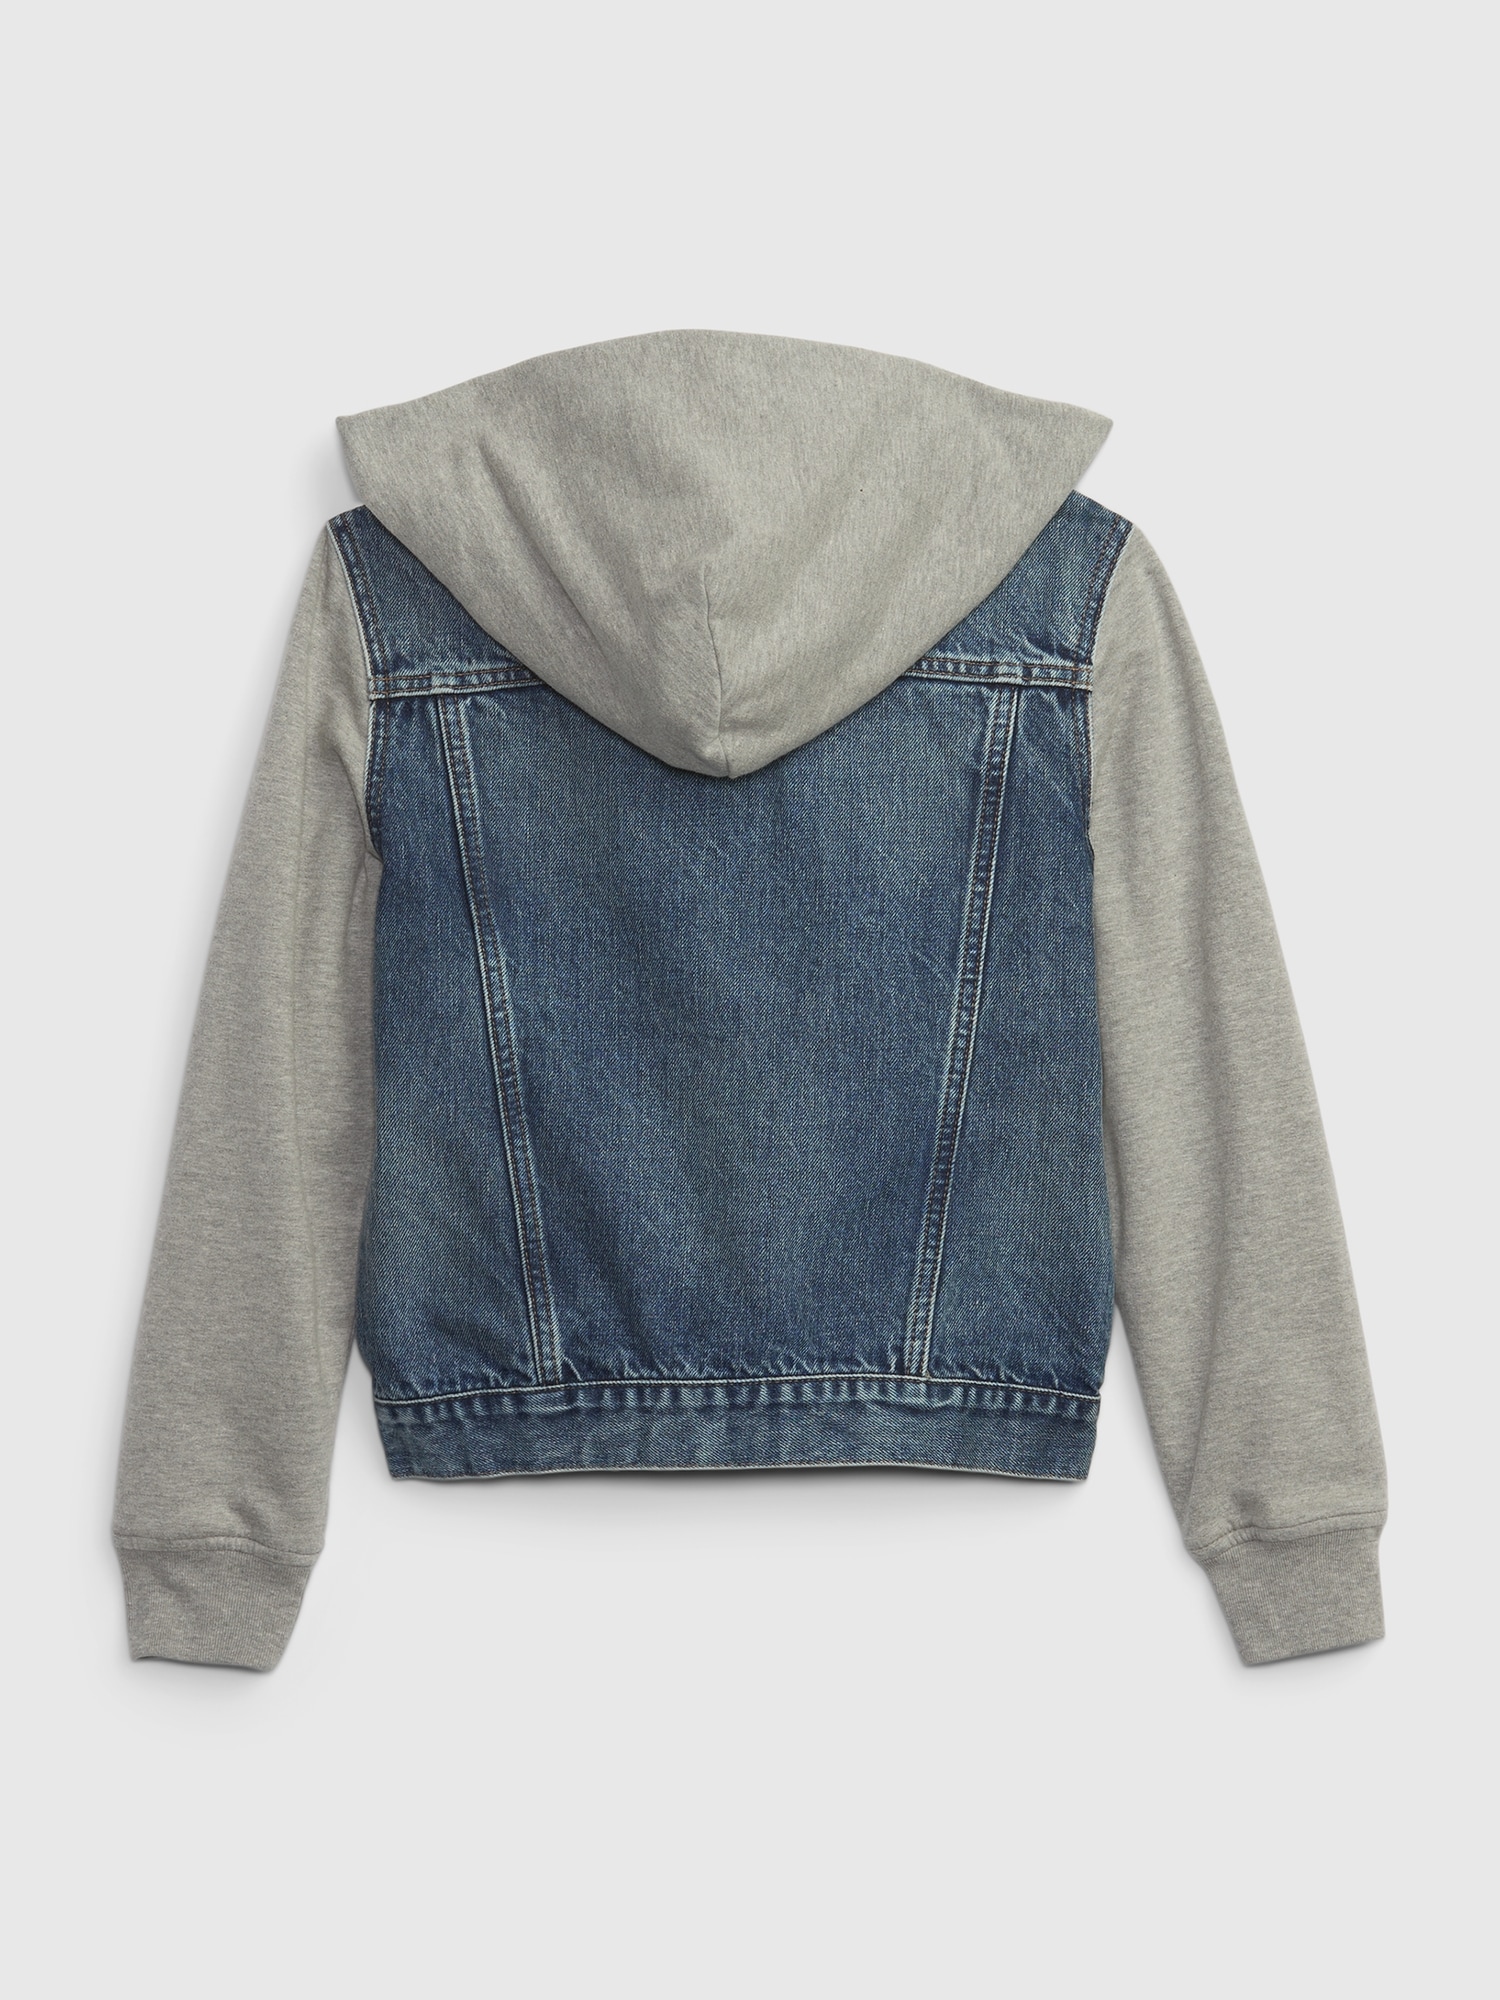  Fishing Hooded Denim Jacket for Kids - Landscape Jean